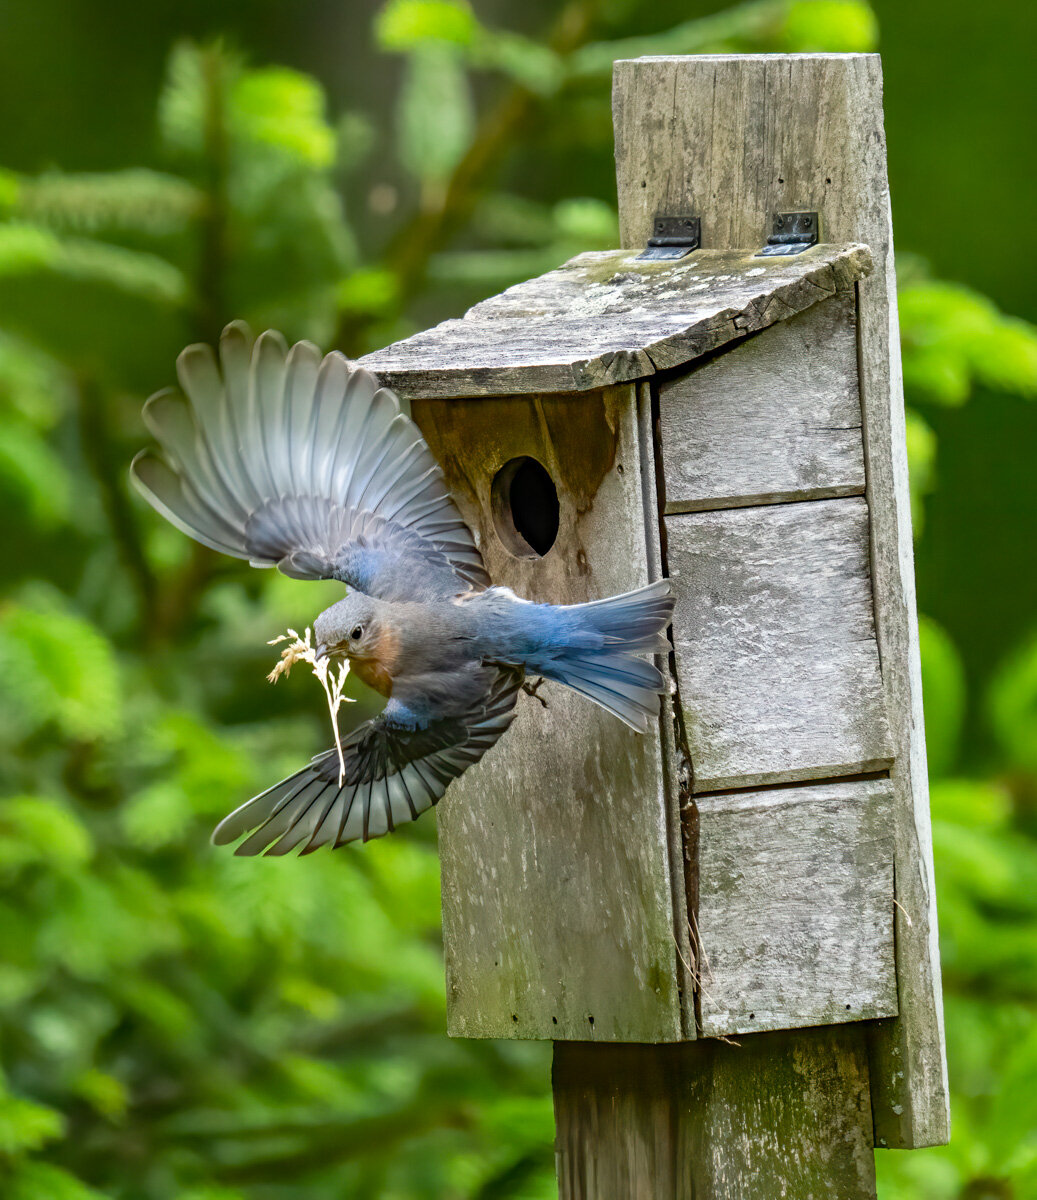   Nesting Bluebird   Sally Stevens 